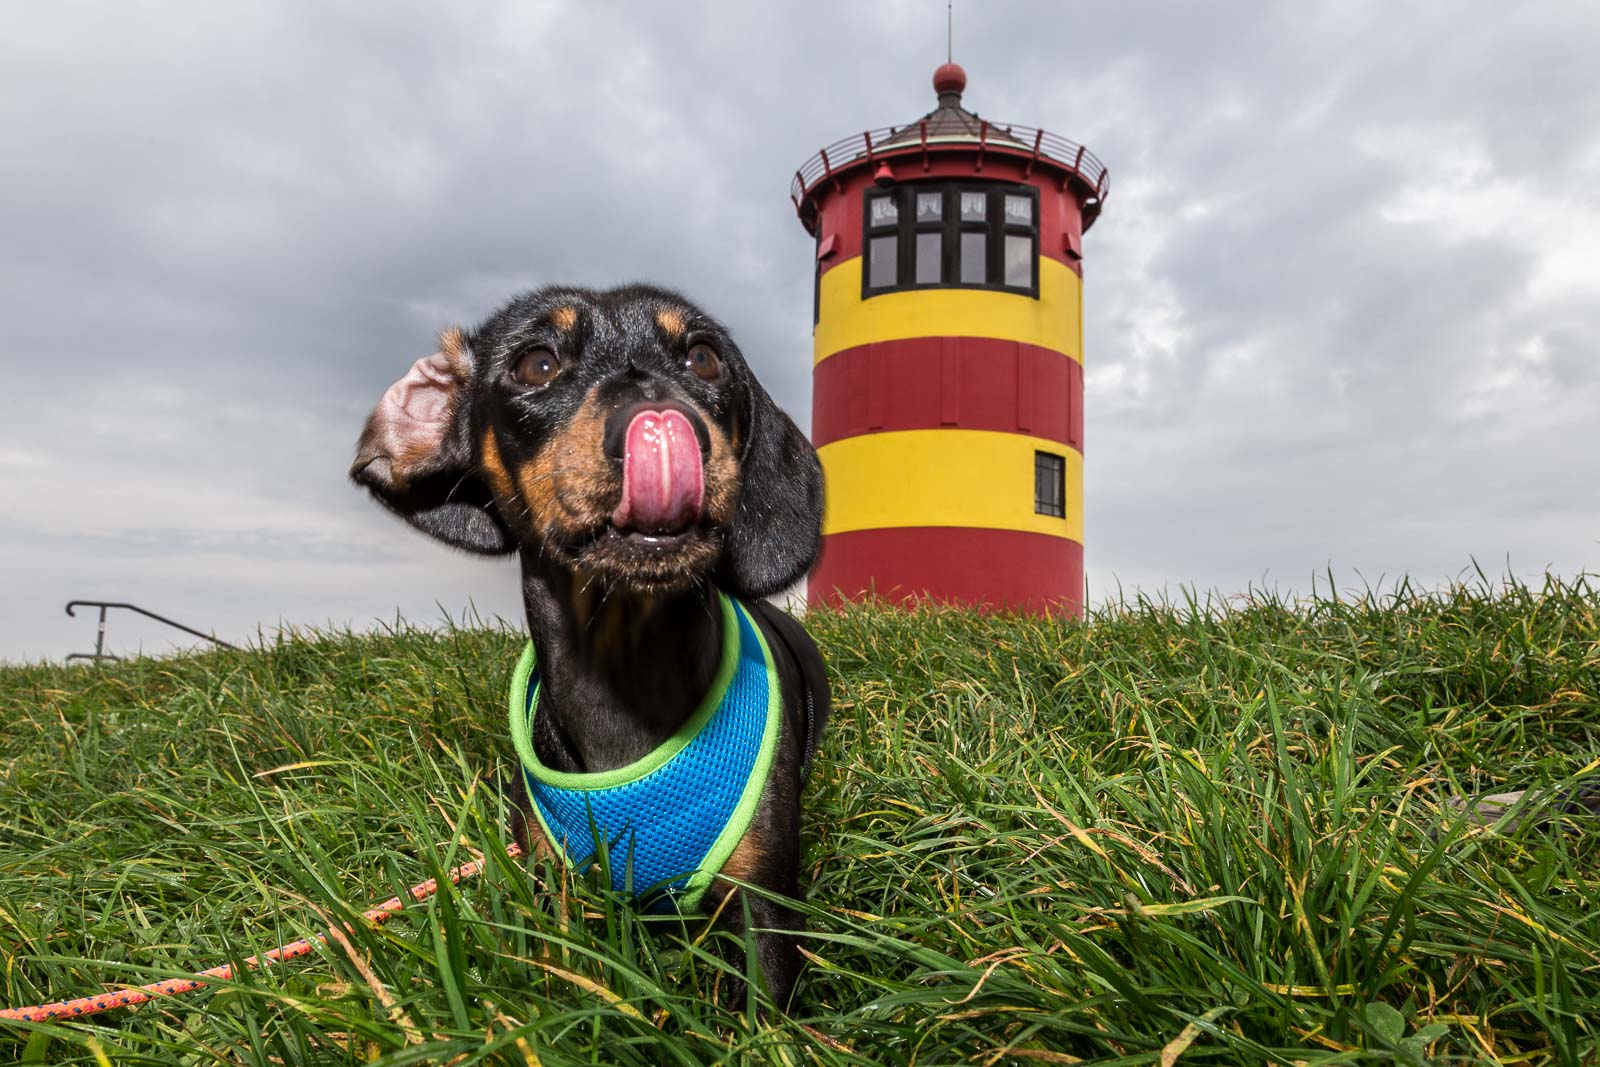 Pilsumer Leuchtturm – oder der Otto Leuchtturm, Ostfriesland